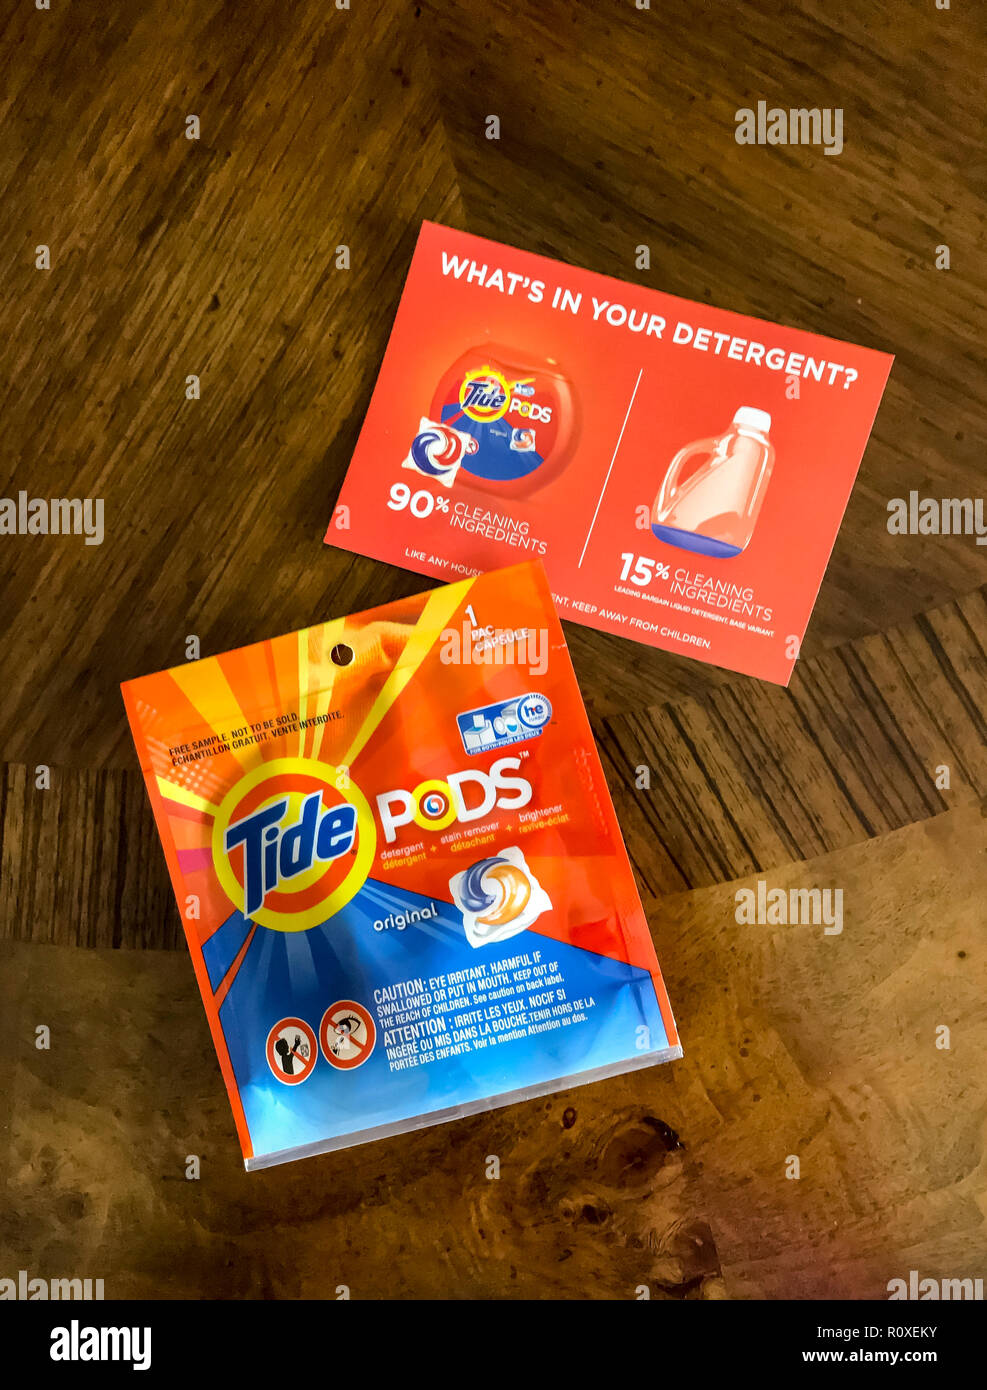 Tide detergent sample from mailer advertisement   © Myrleen Pearson  ...Ferguson Cate Stock Photo